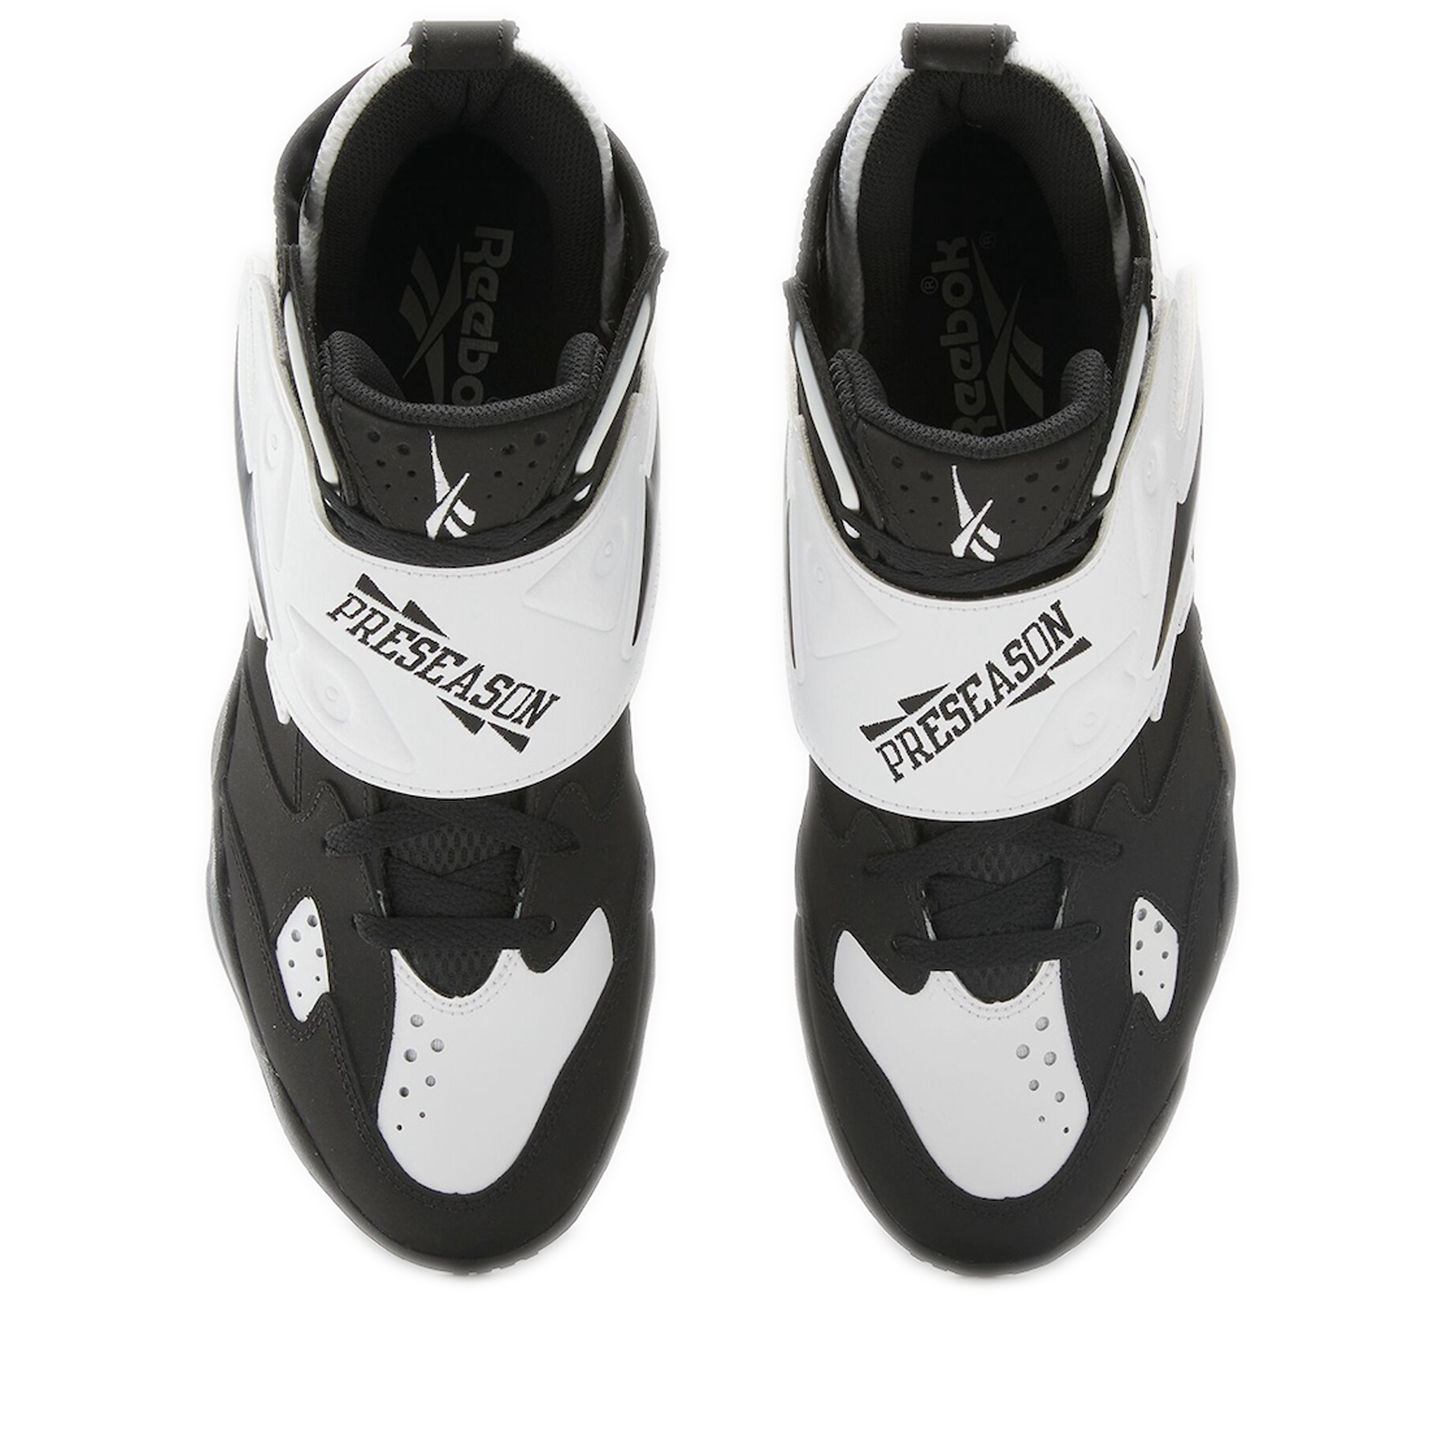 Men's Reebok Preseason 94 Dynamic Shoes - Core Black / Ftwr White / Core Black